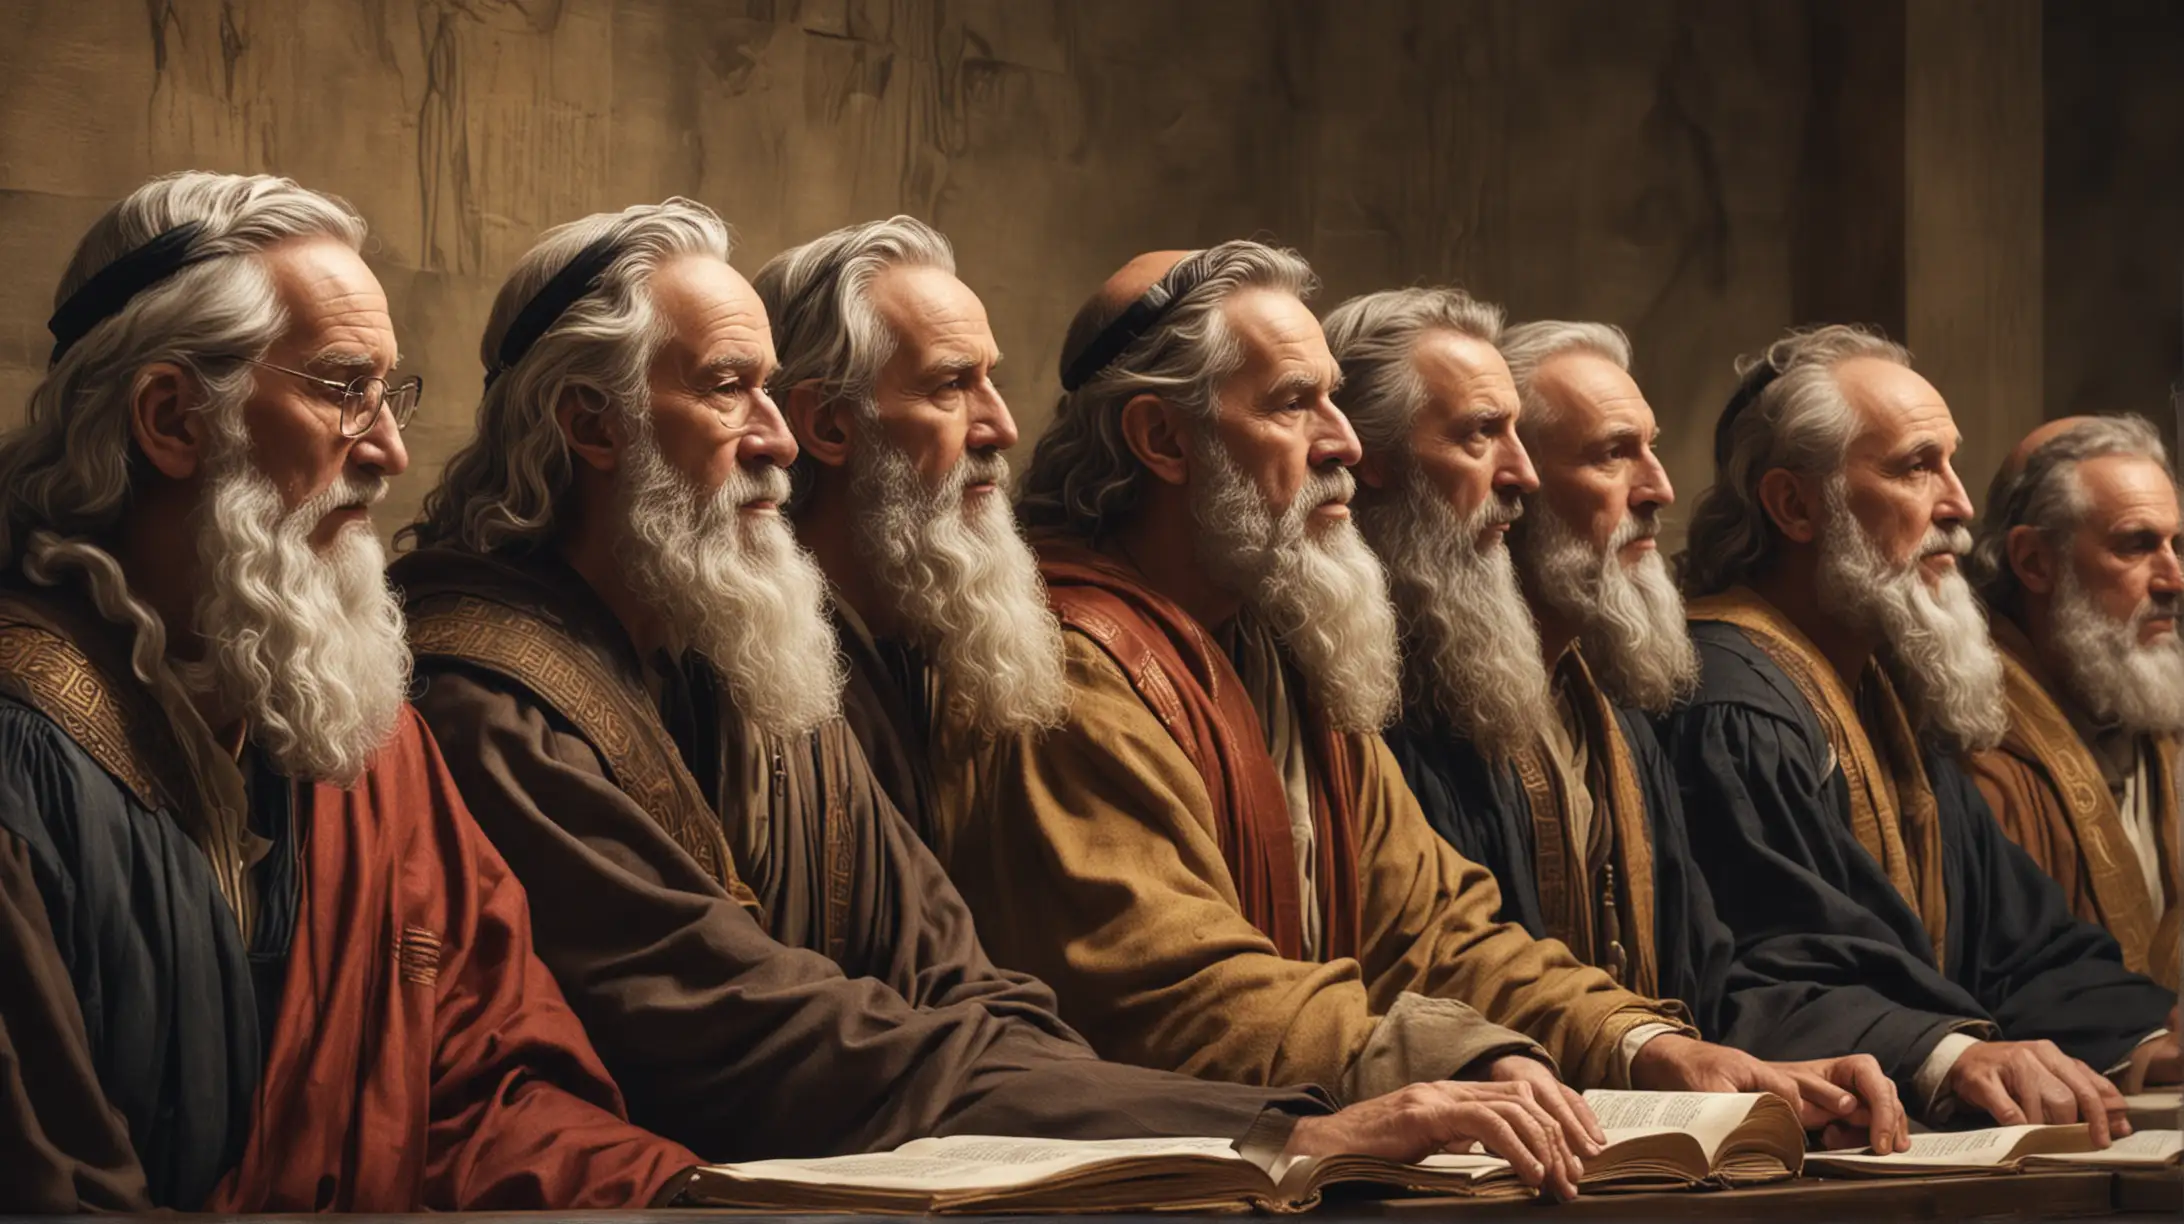 Biblical Moses Era CloseUp of Council of Judges